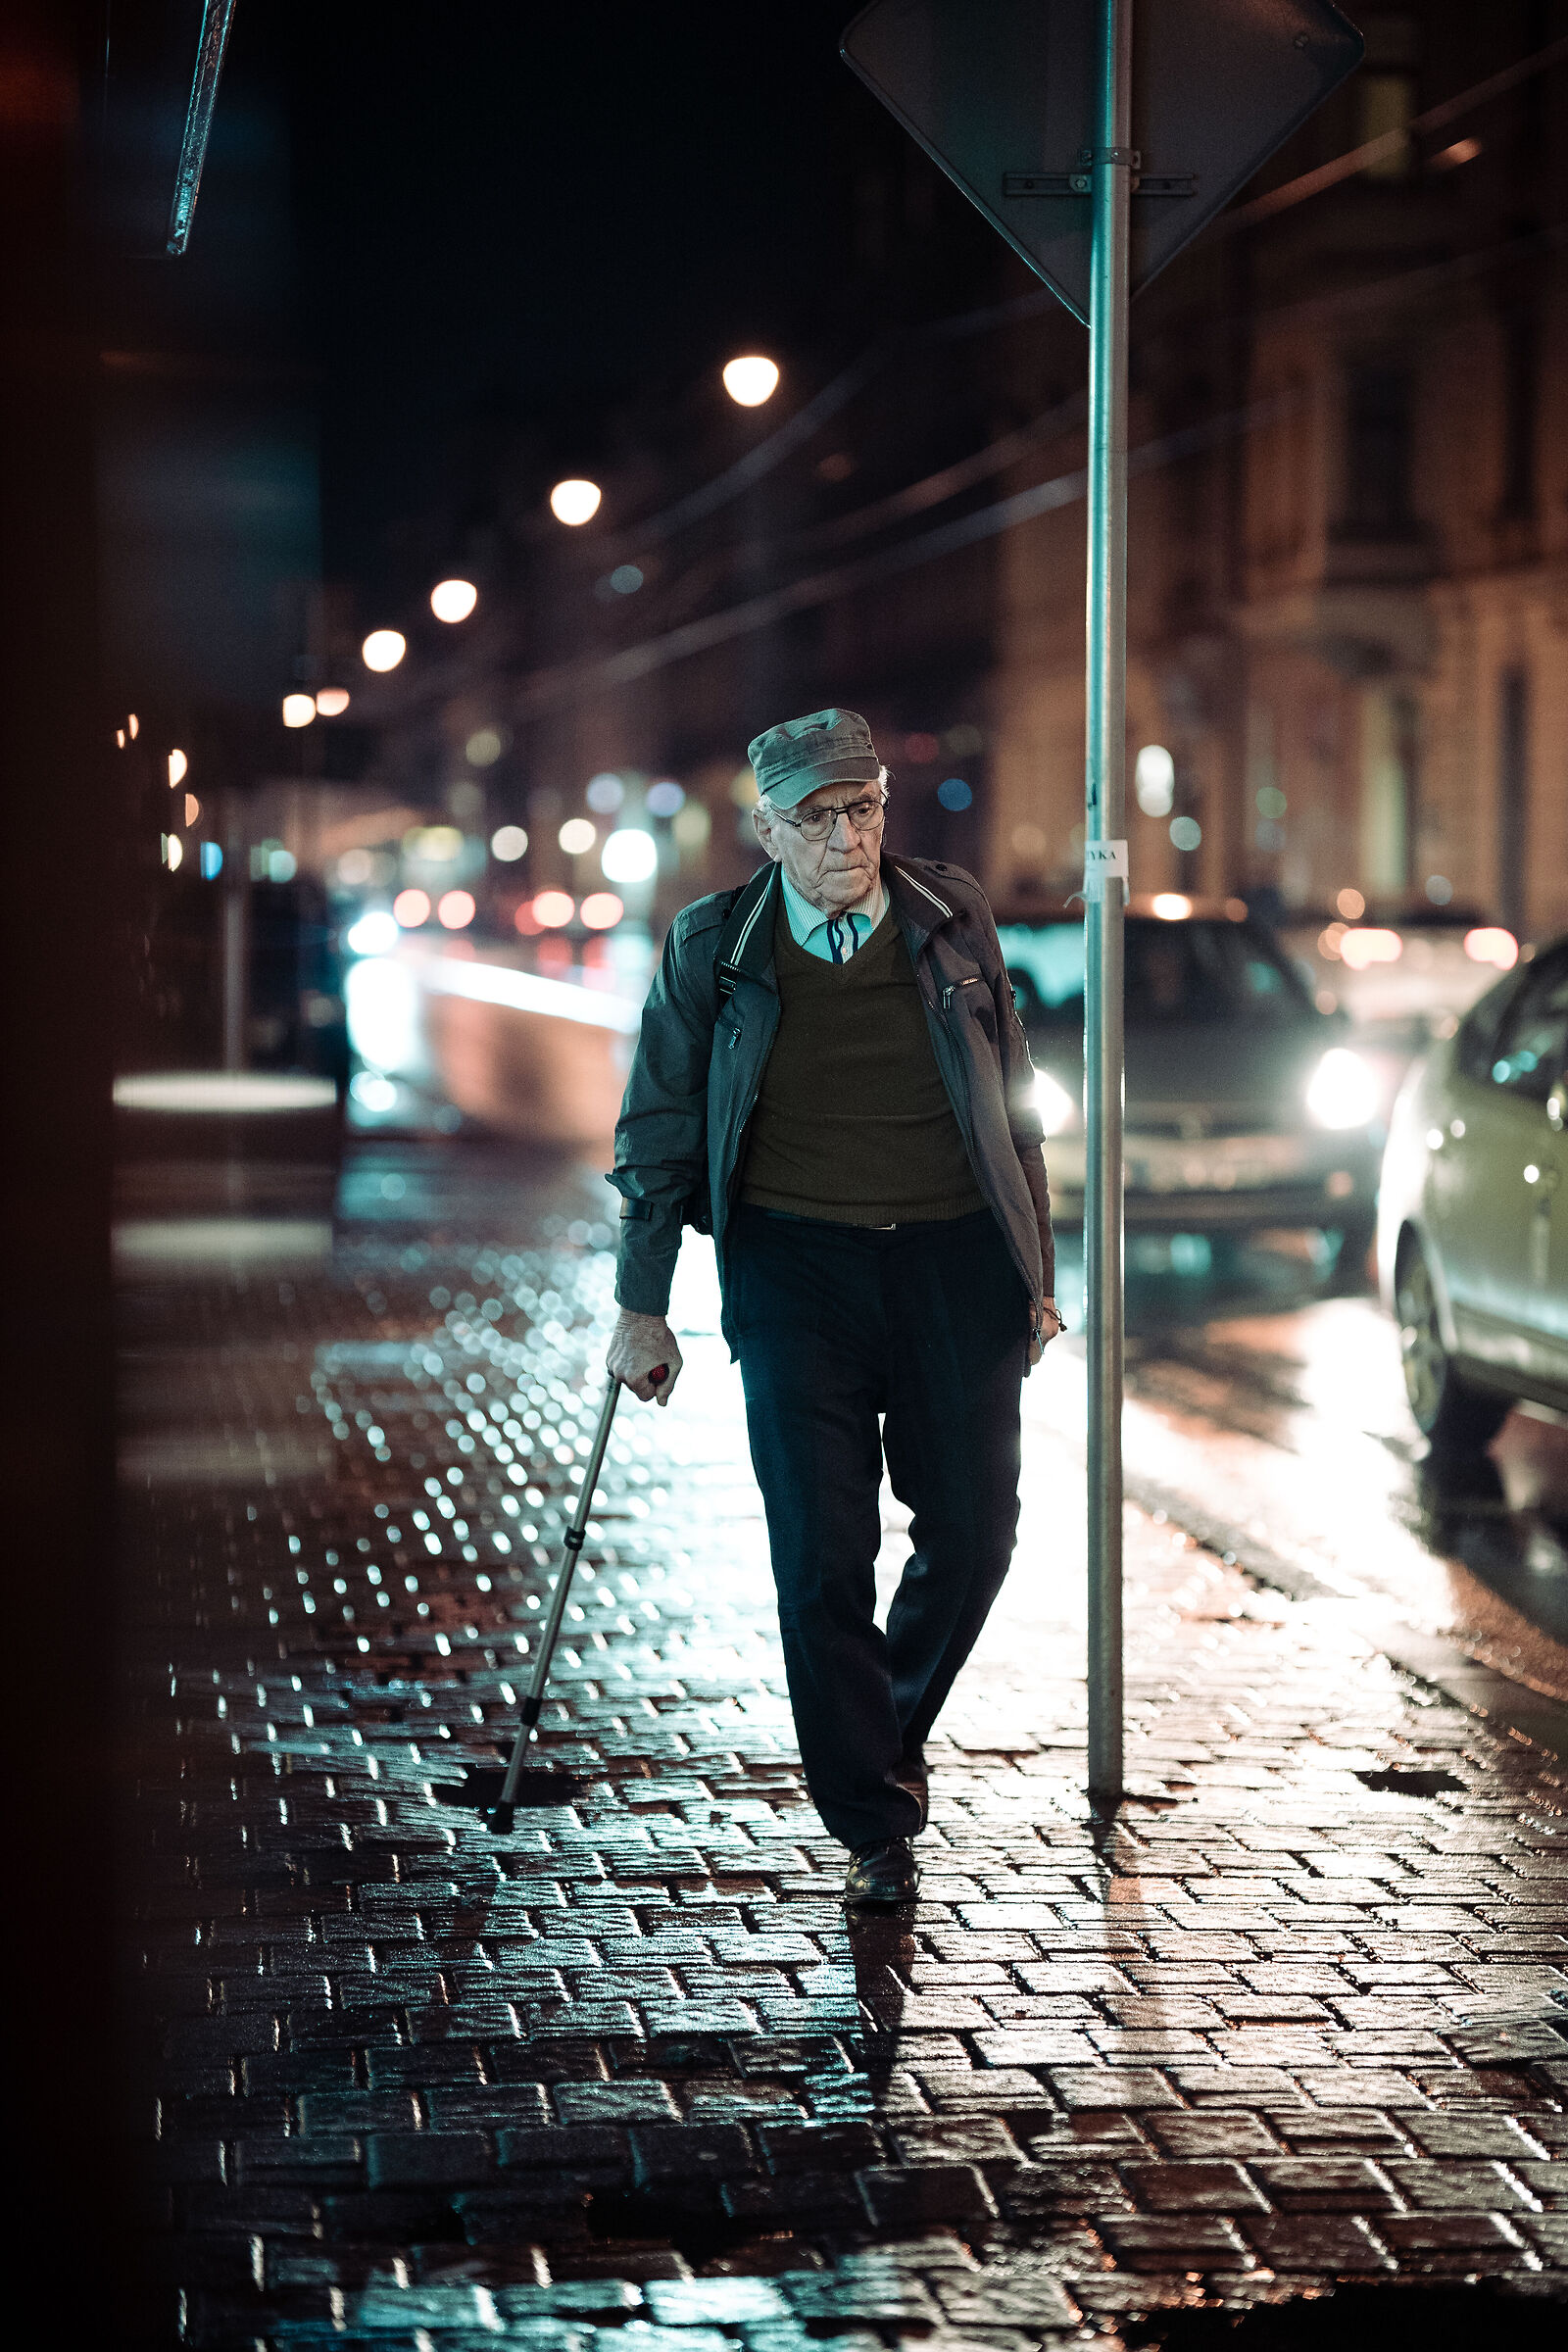 An elderly man walking at night...